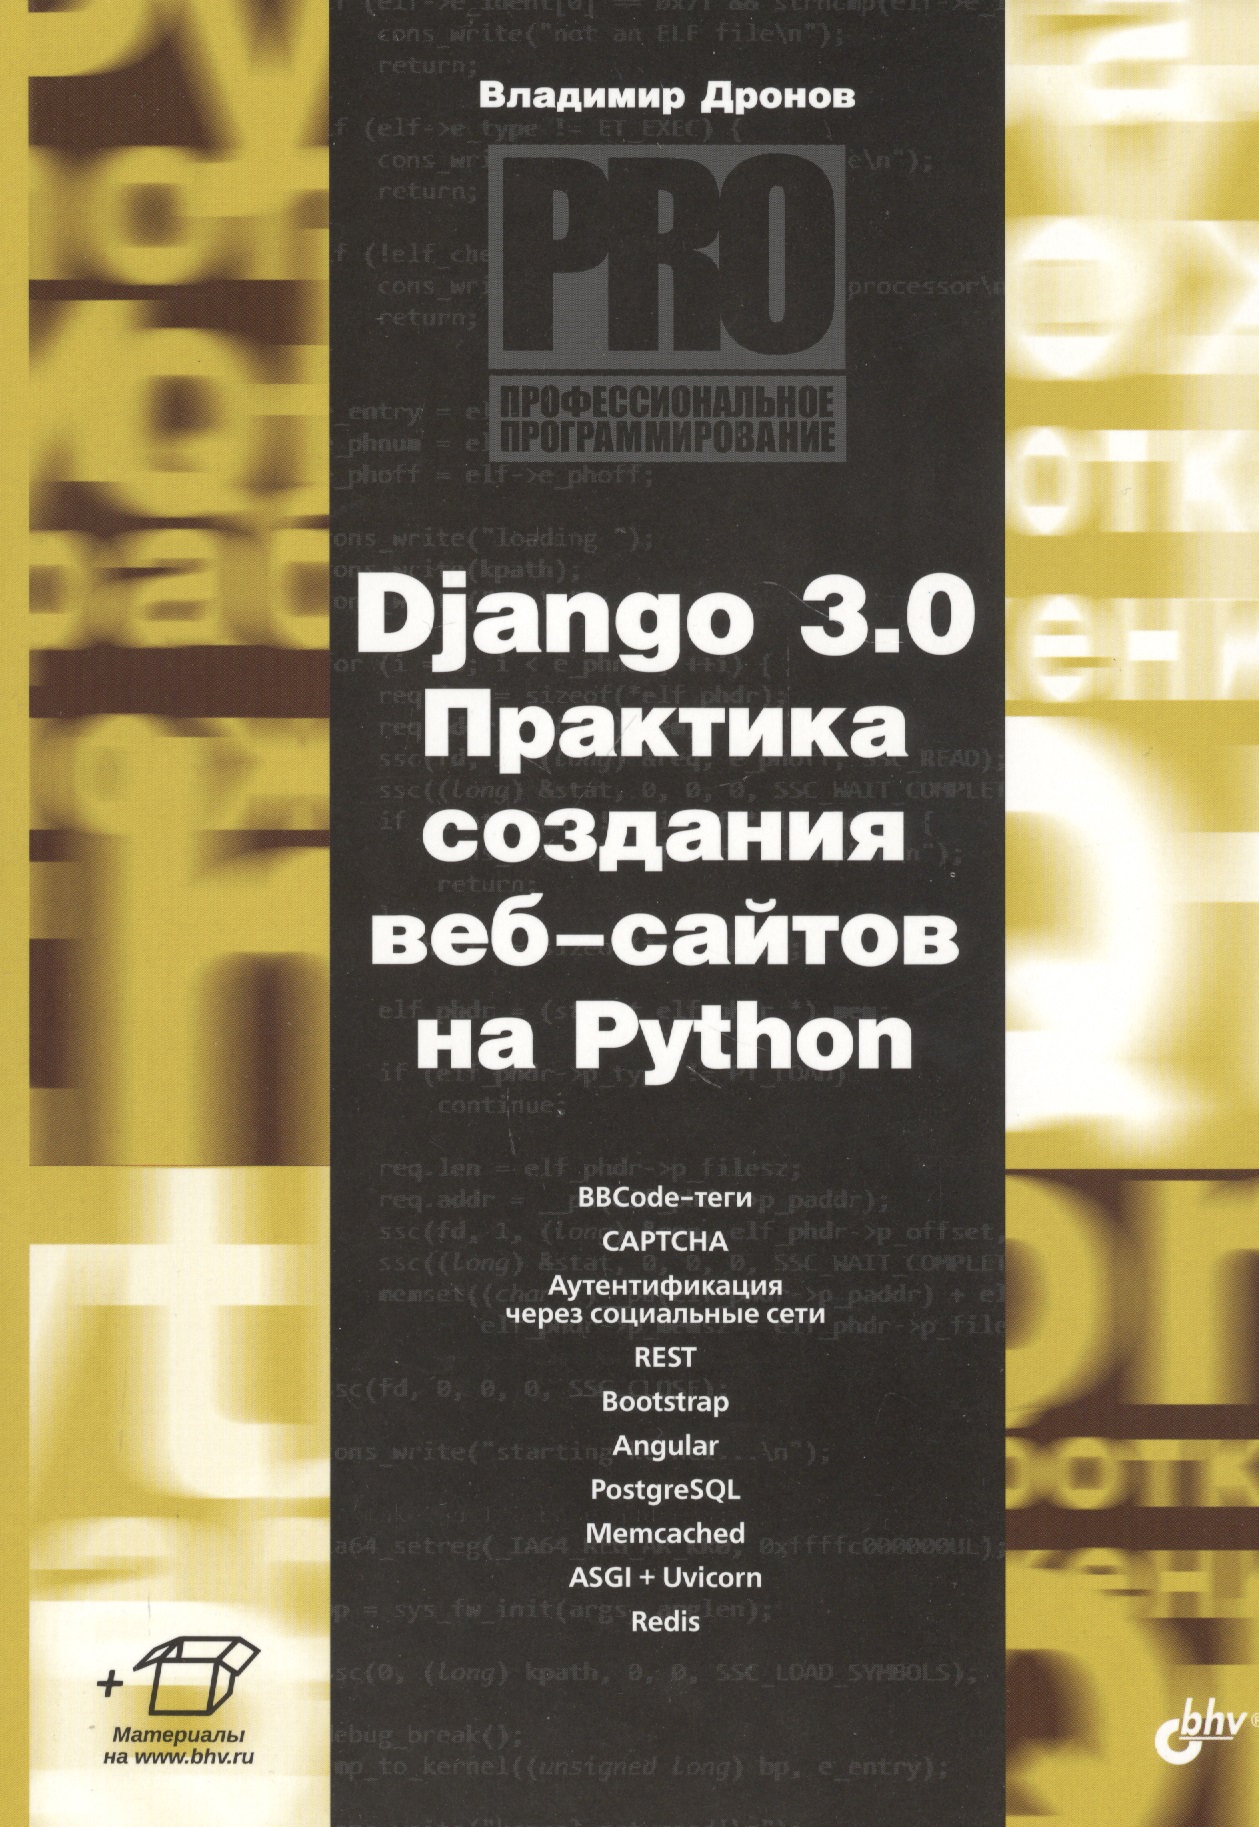 Дронов Владимир Александрович Django 3.0. Практика создания веб-сайтов на Python трек веб разработка на django